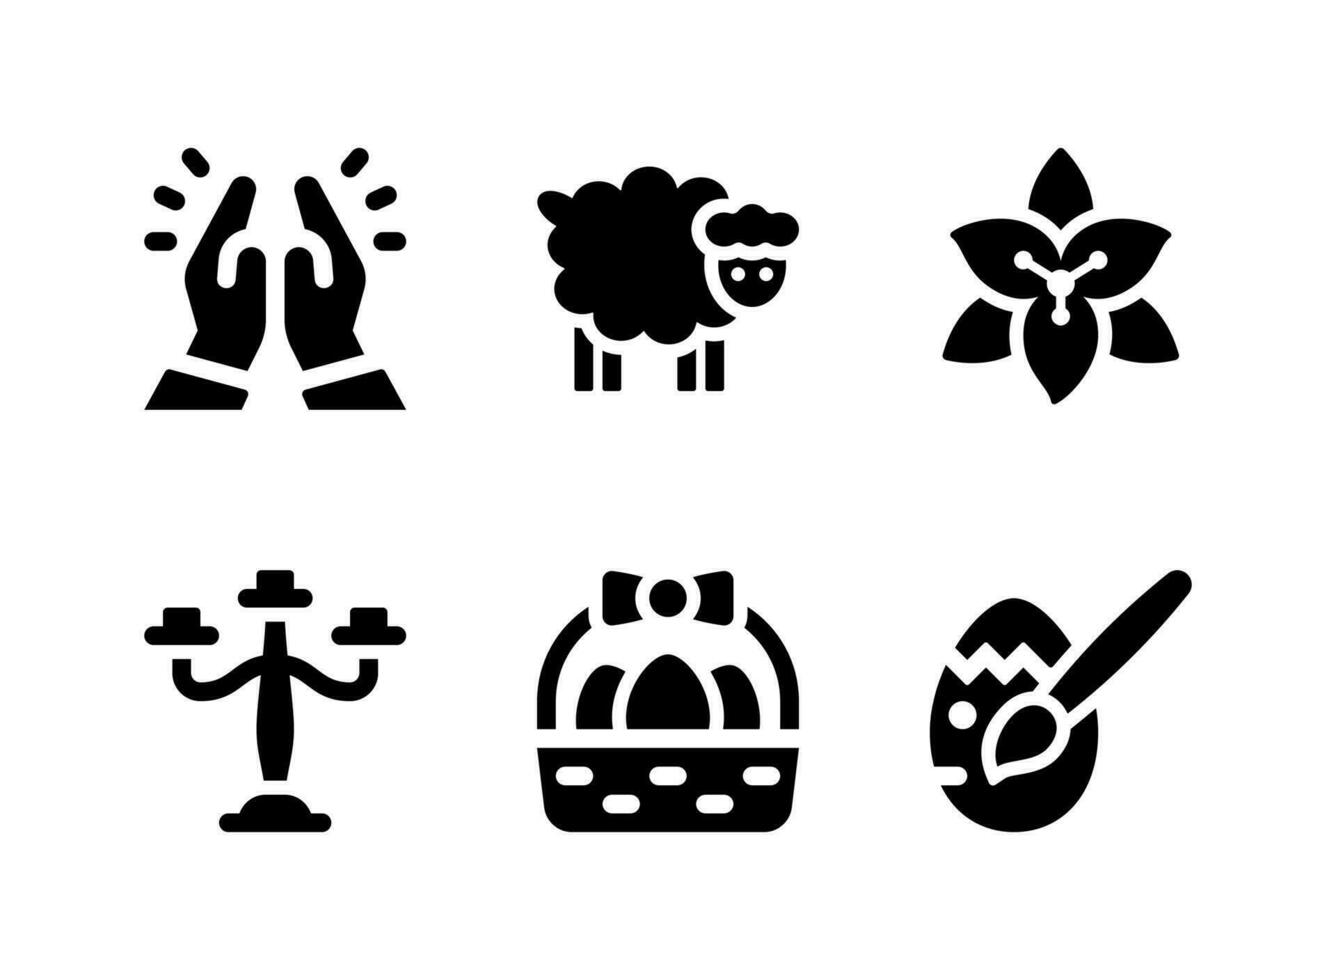 einfacher Satz von Ostern verwandten Vektorfesten Ikonen. enthält Symbole wie Kandelaber, Osterkorb, bemaltes Ei, Beten und mehr vektor